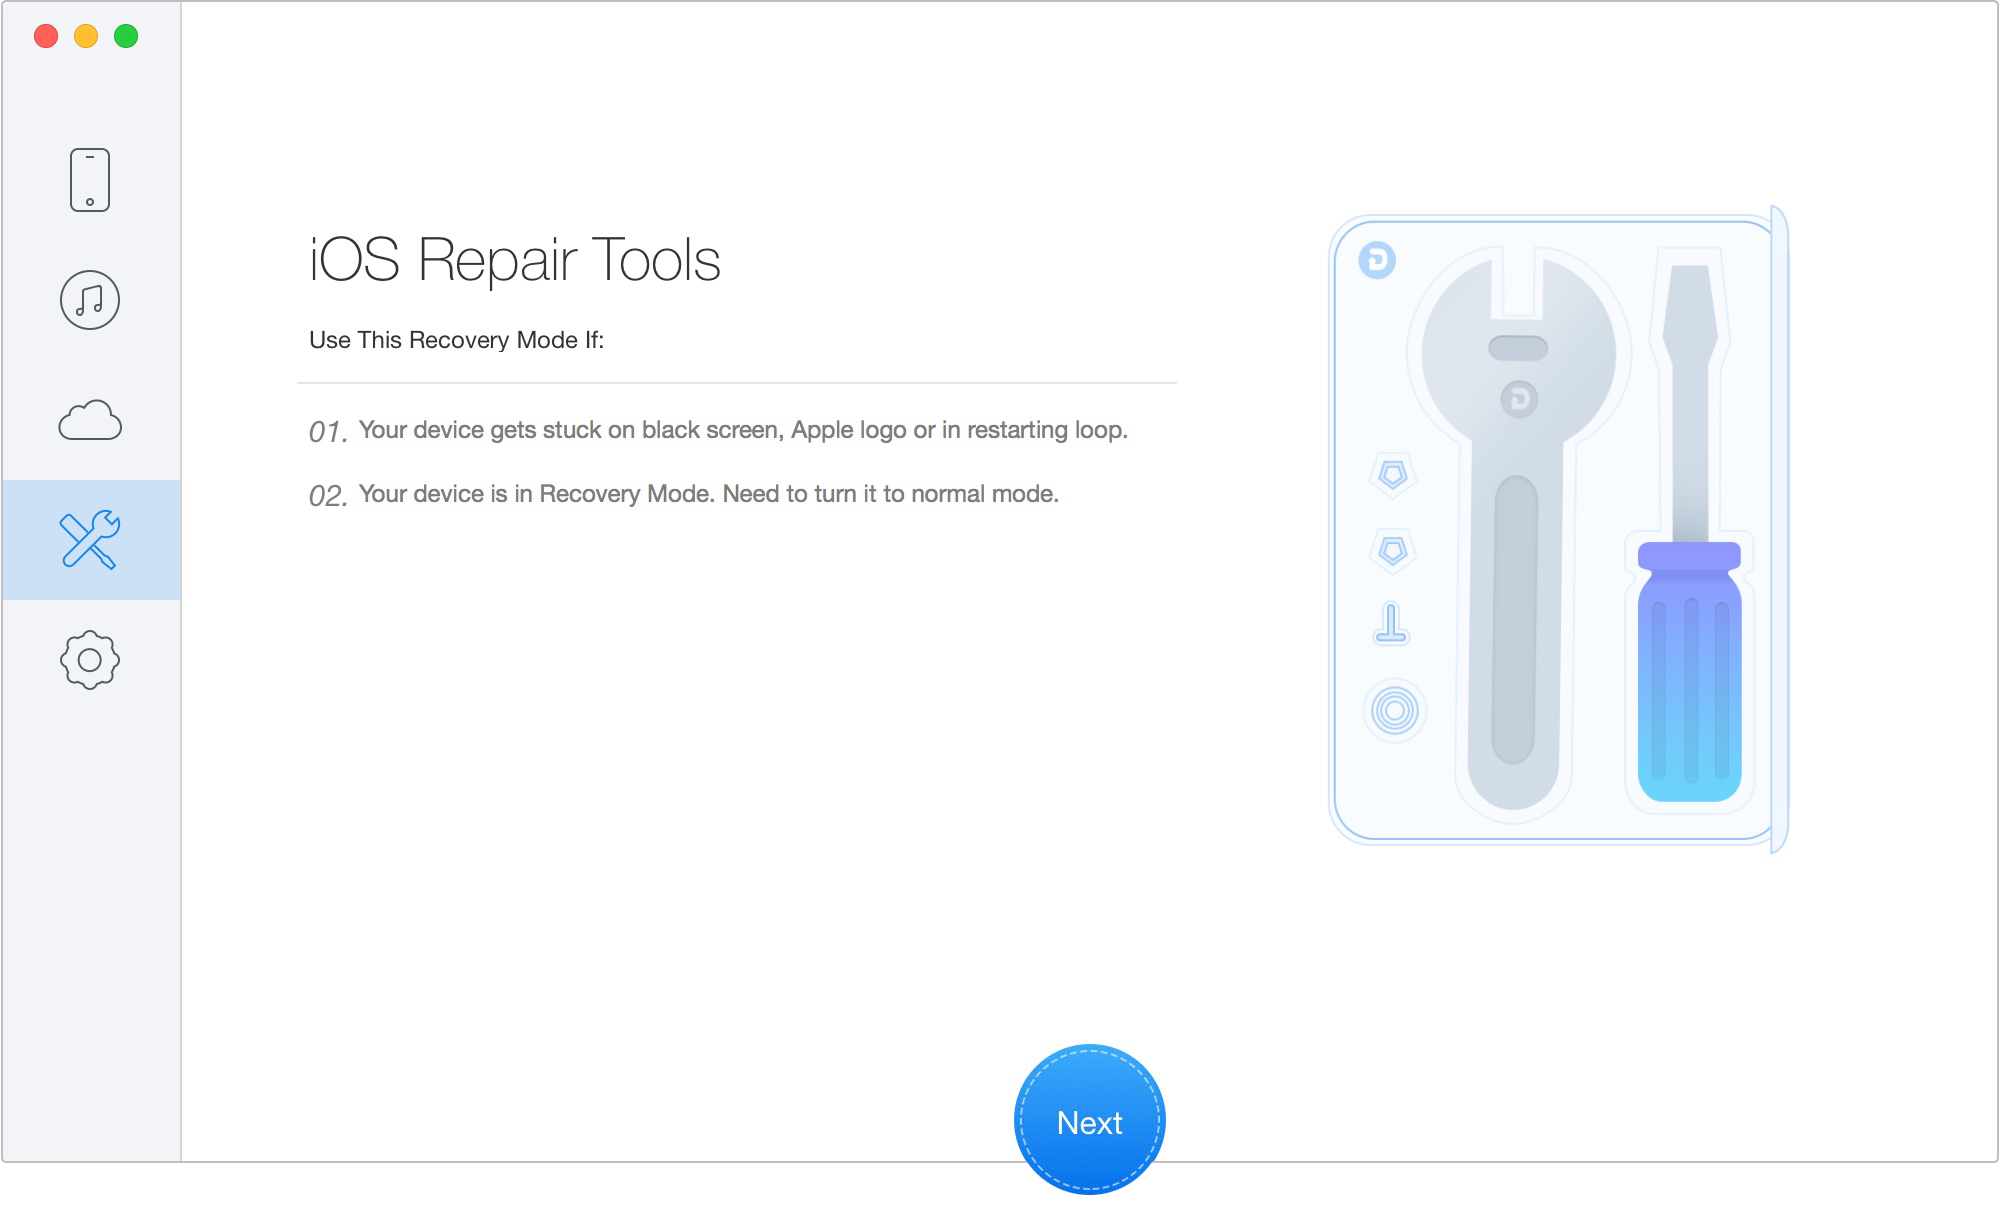 "iOS Repair Tools" mode